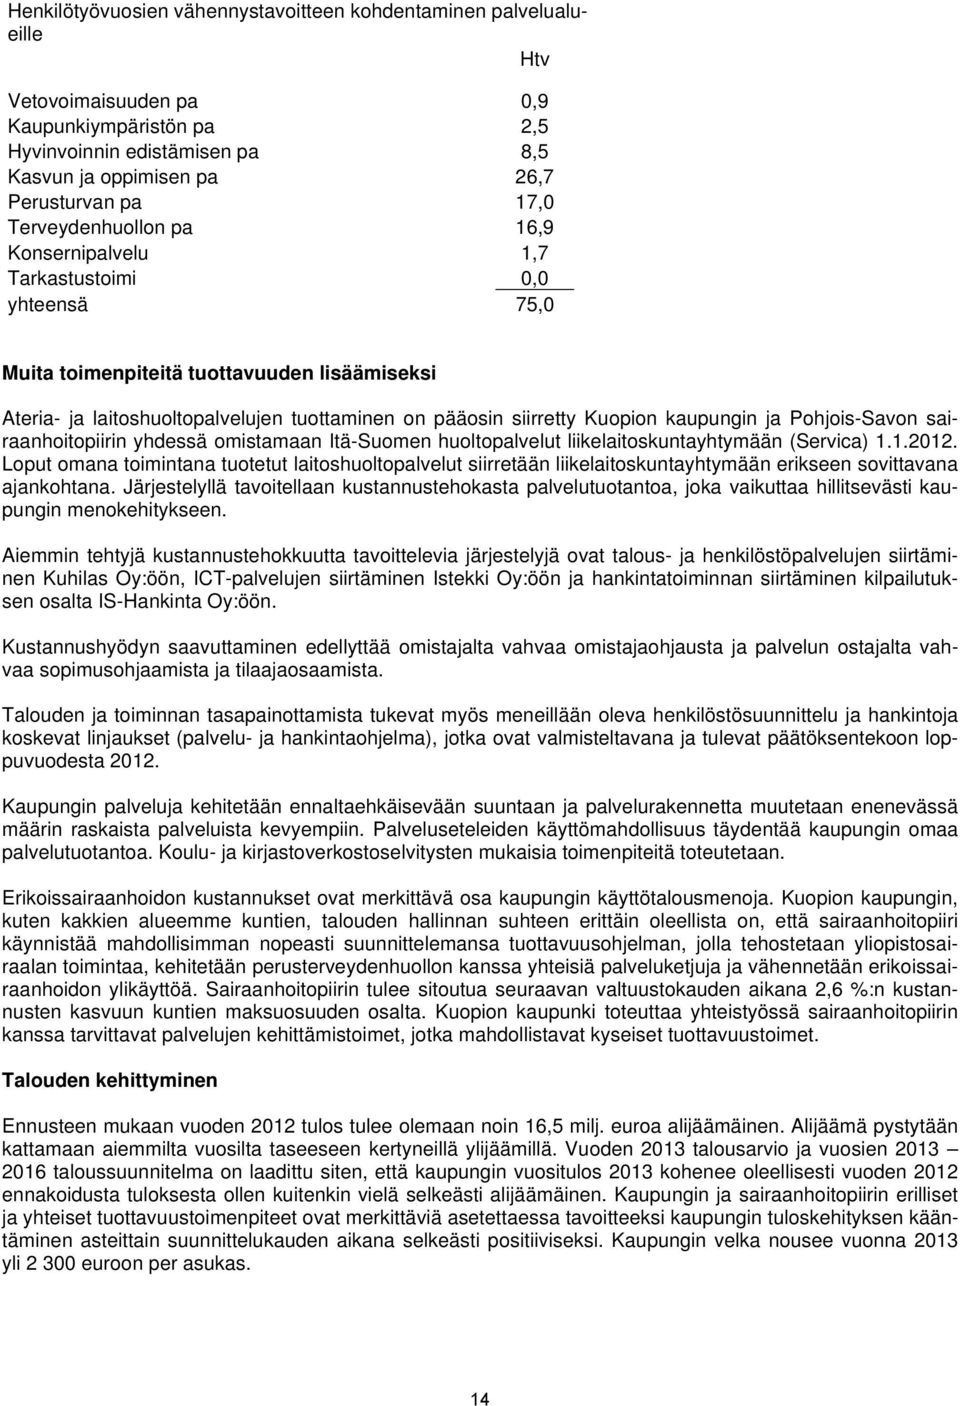 Kuopion kaupungin ja Pohjois-Savon sairaanhoitopiirin yhdessä omistamaan Itä-Suomen huoltopalvelut liikelaitoskuntayhtymään (Servica) 1.1.2012.